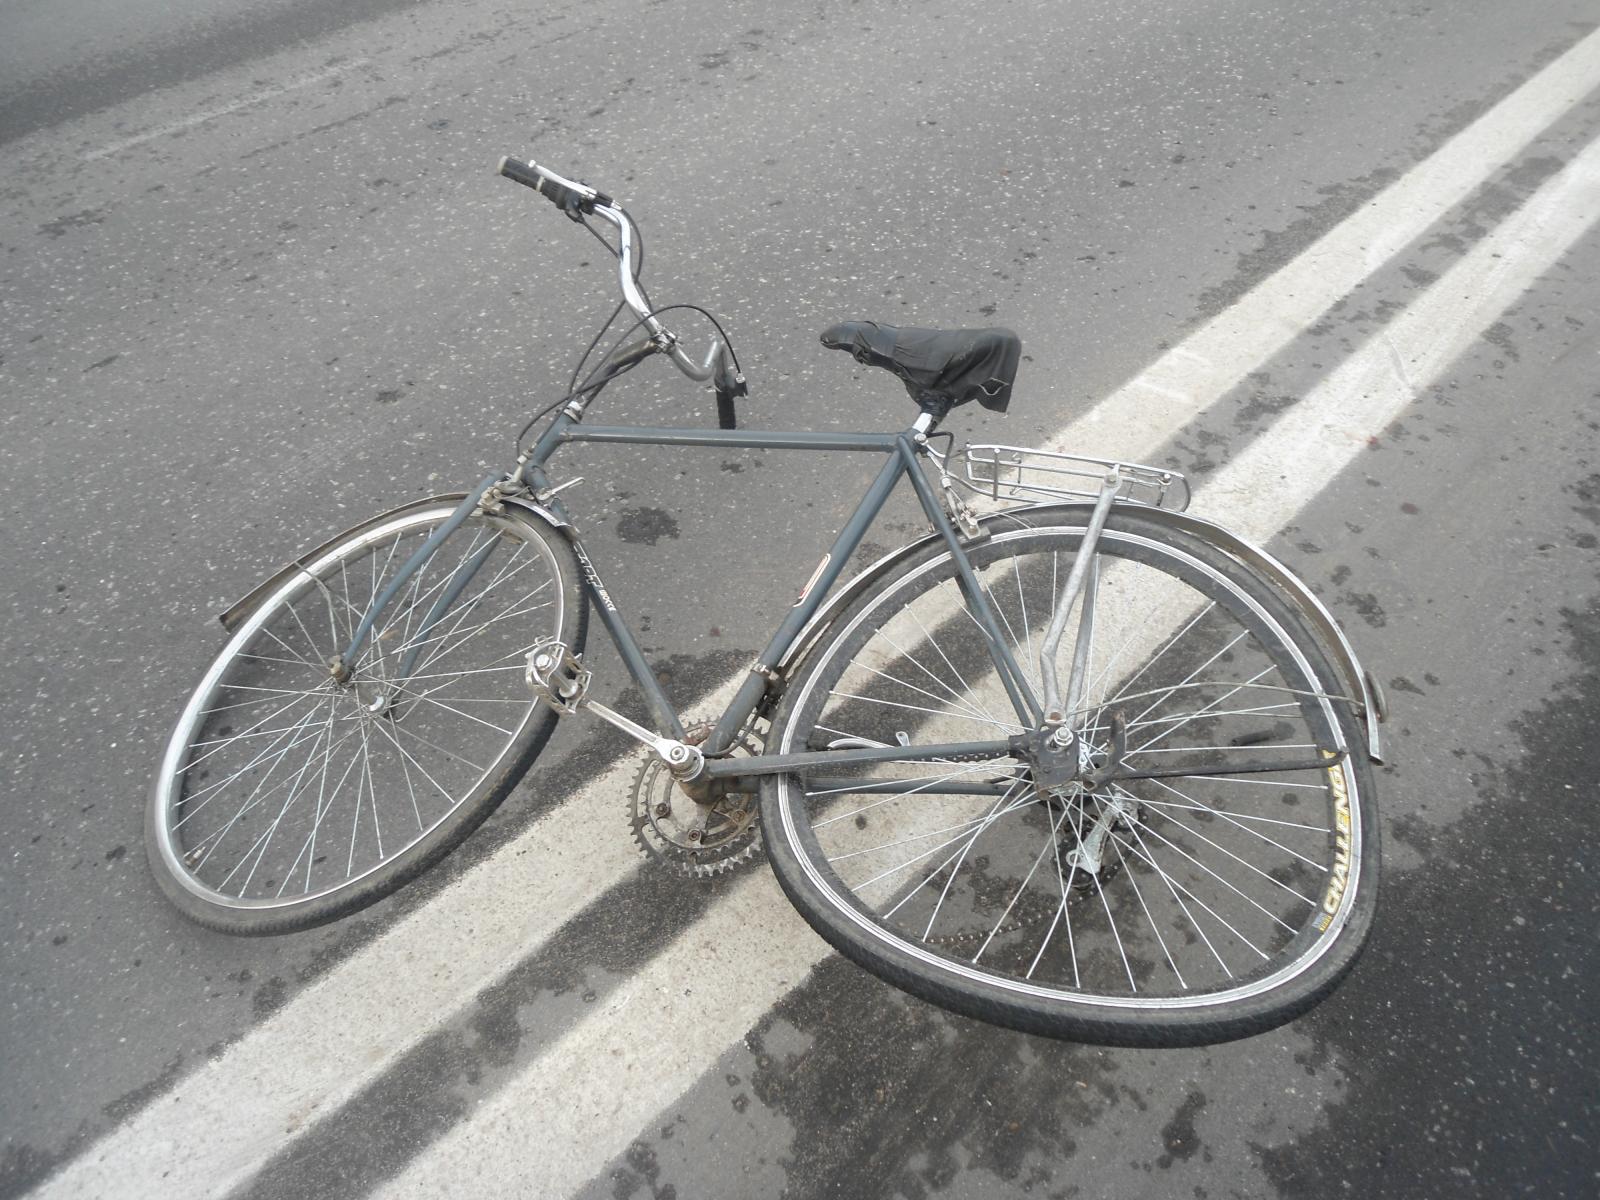  В Кемерове автомобилист сбил школьника - велосипедиста .jpg